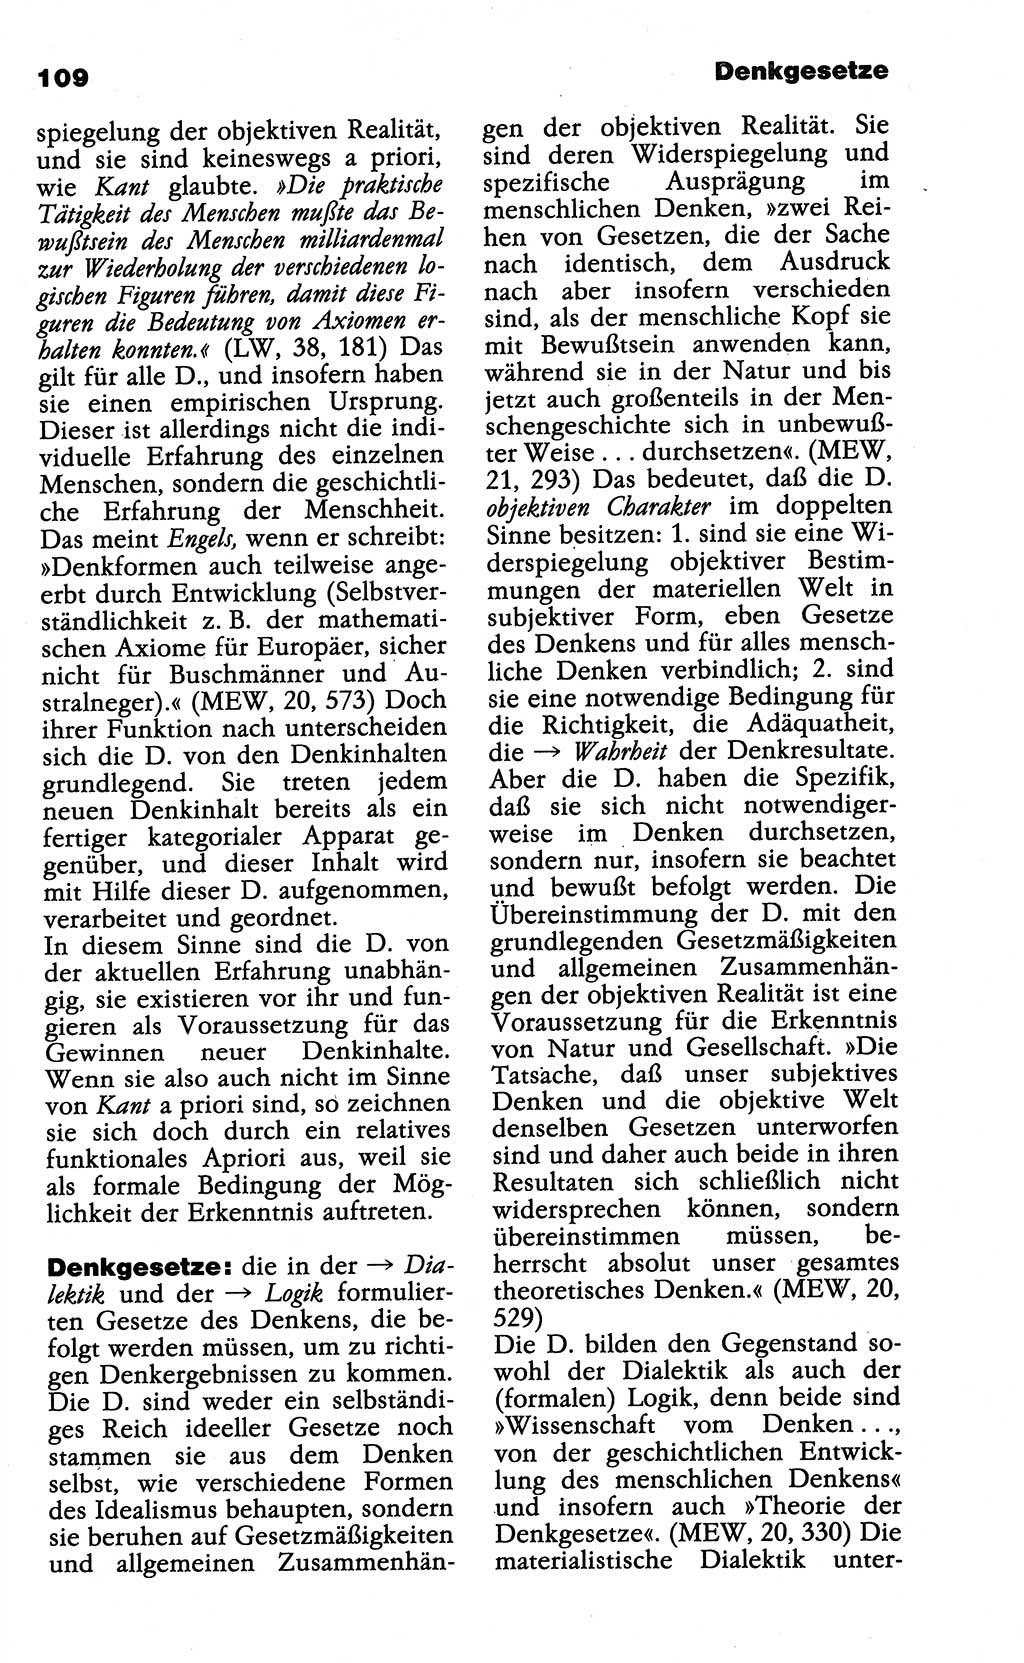 Wörterbuch der marxistisch-leninistischen Philosophie [Deutsche Demokratische Republik (DDR)] 1985, Seite 109 (Wb. ML Phil. DDR 1985, S. 109)